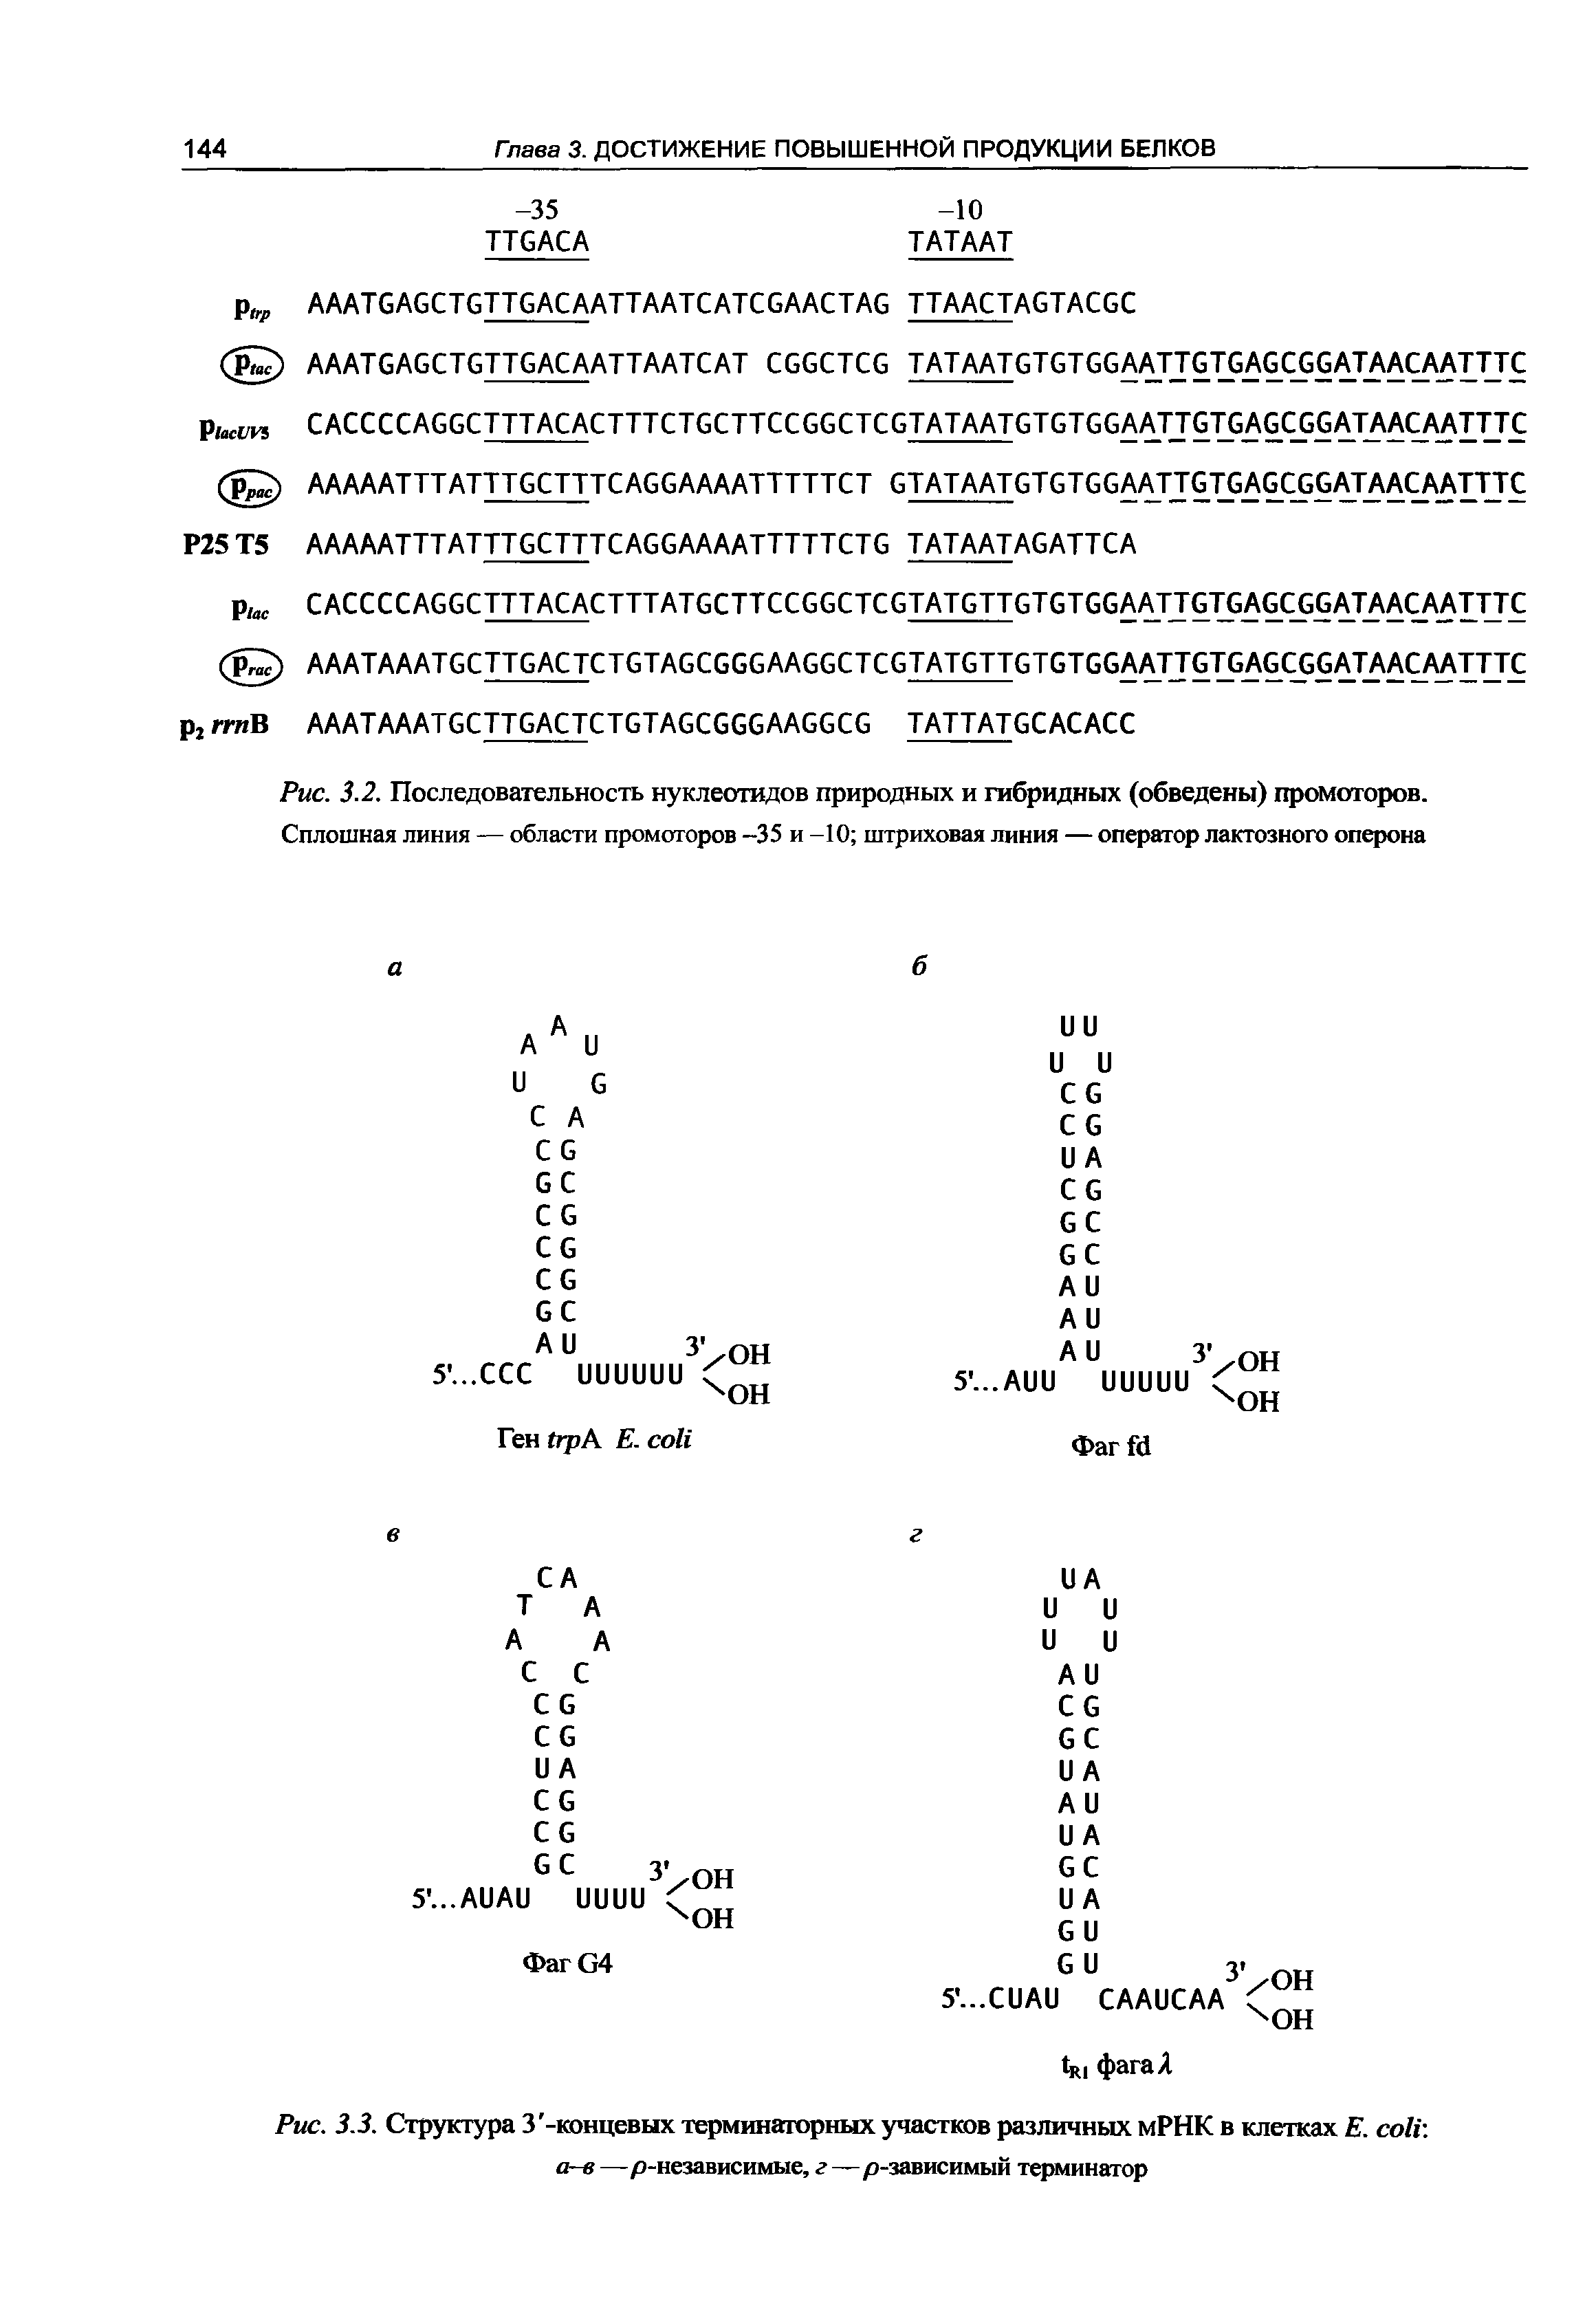 Рис. 3.2. Последовательность нуклеотидов природных и гибридных (обведены) промоторов.